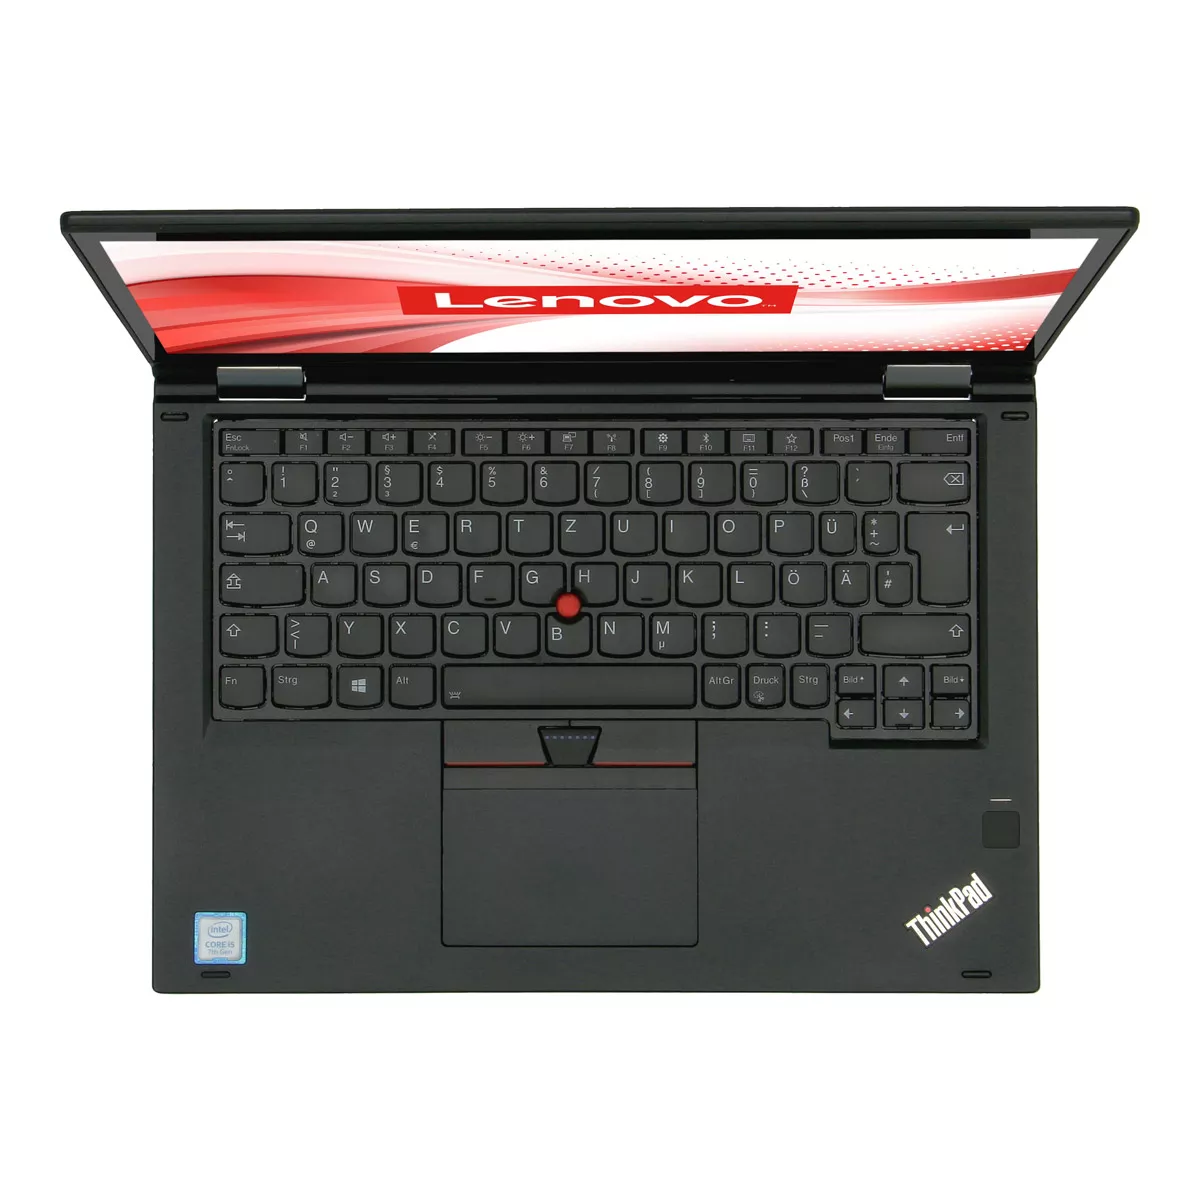 Lenovo ThinkPad X380 Yoga Core i7 8550U Full-HD Touch 16 GB DDR4 500 GB M.2 SSD Webcam A+